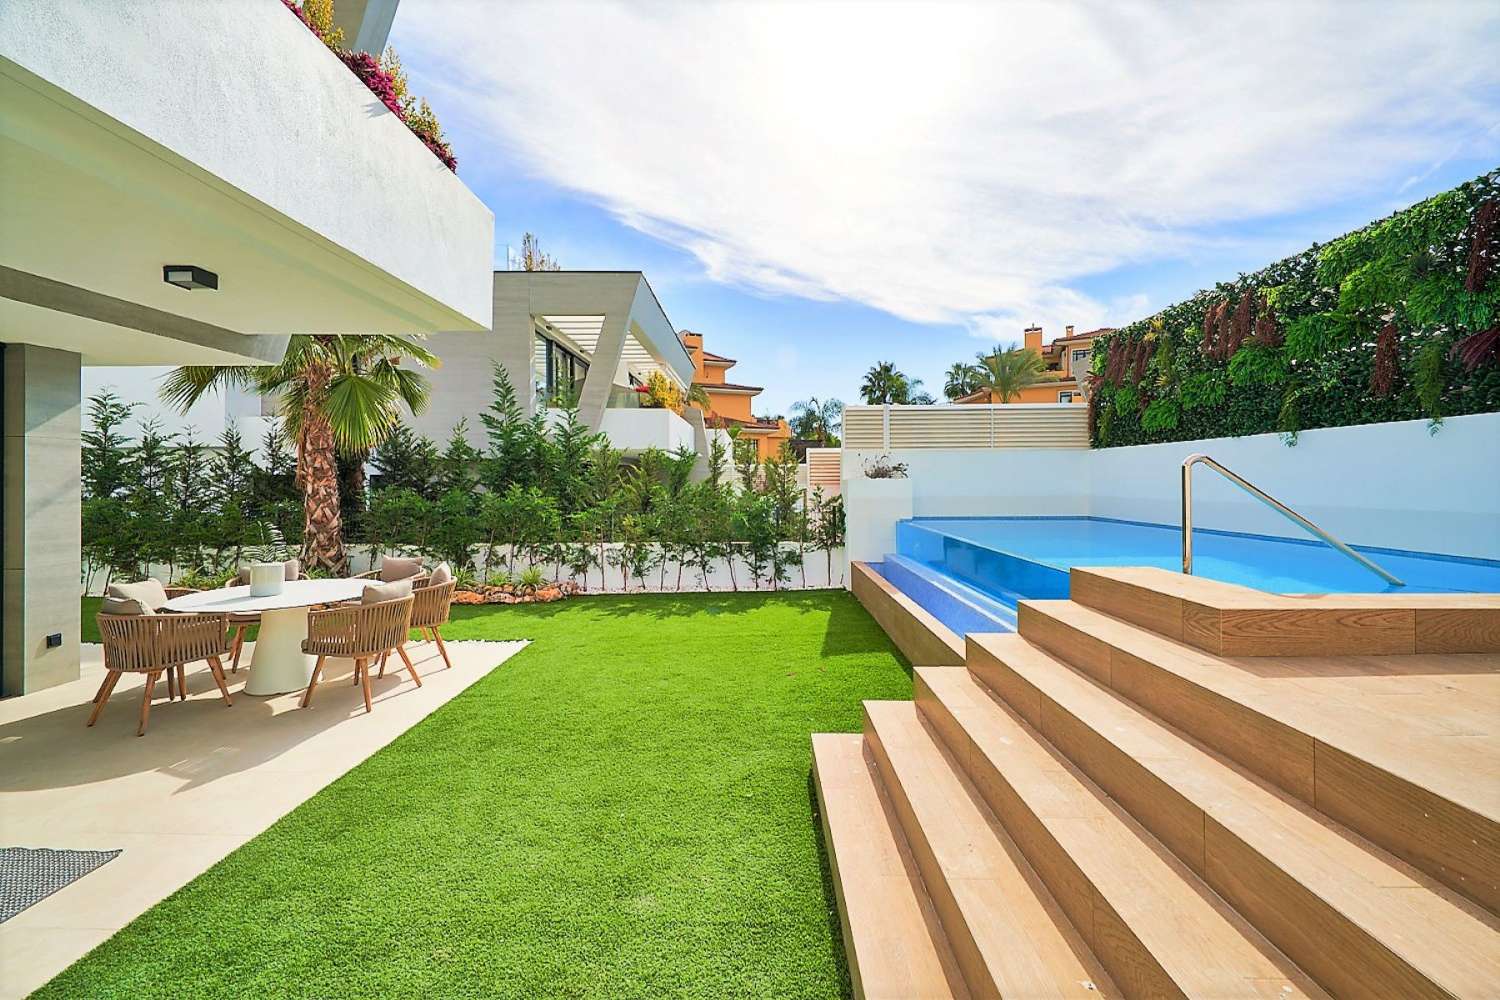 Maisons jumelées Key Ready avec piscine privée et sous-sol complet, sur la plage de Puerto Banús, et à quelques pas du port